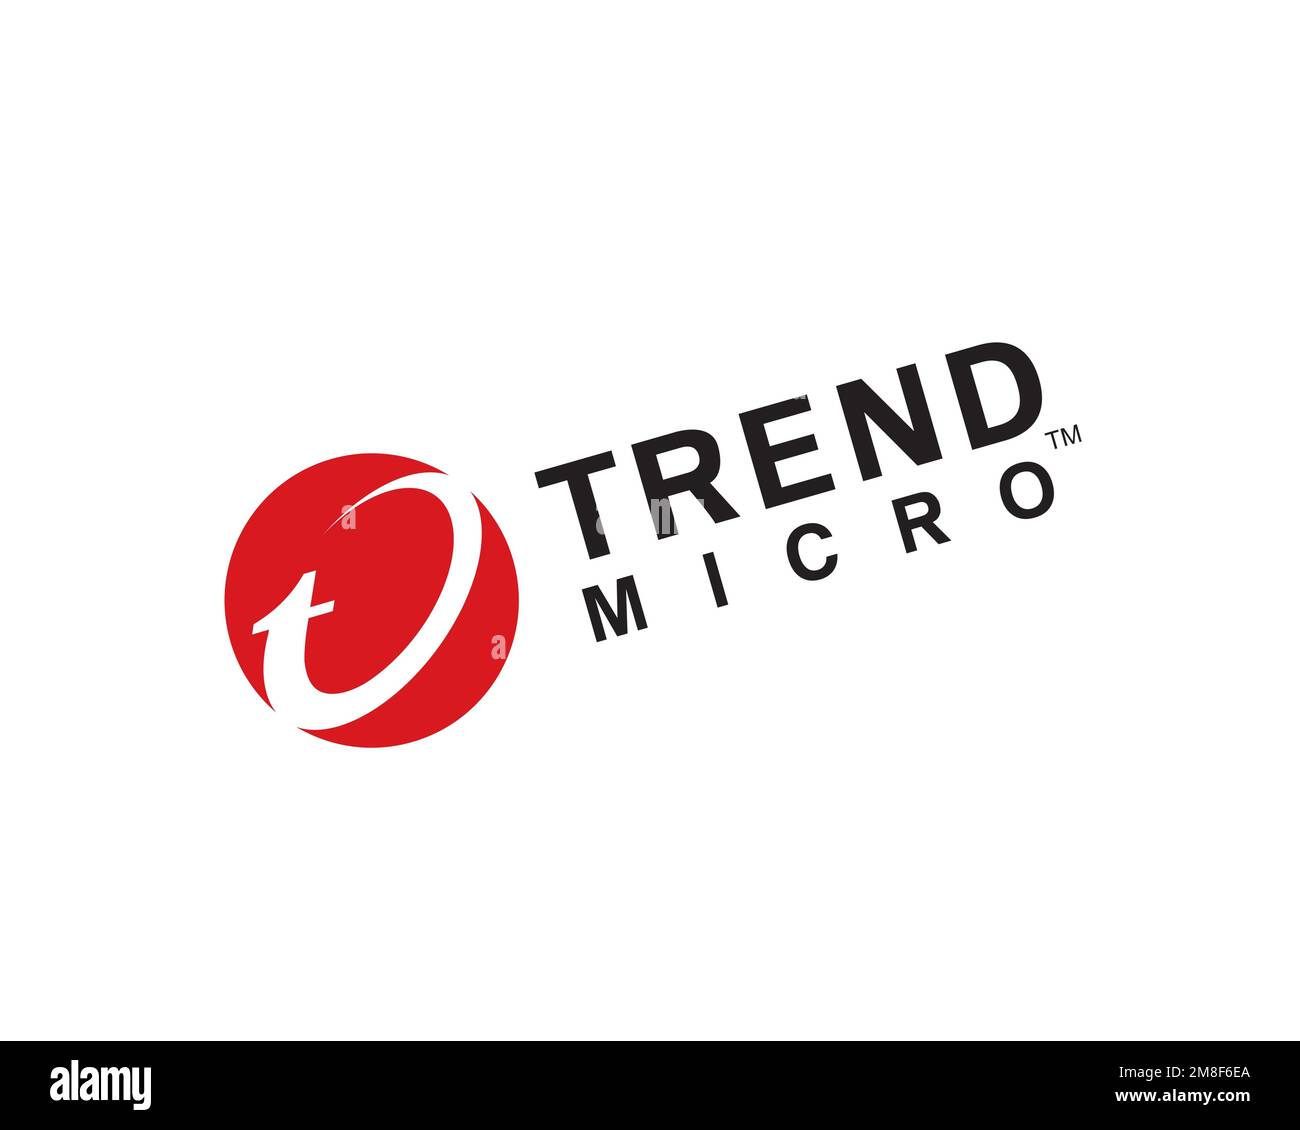 Trend micro, logo pivoté, fond blanc Banque D'Images